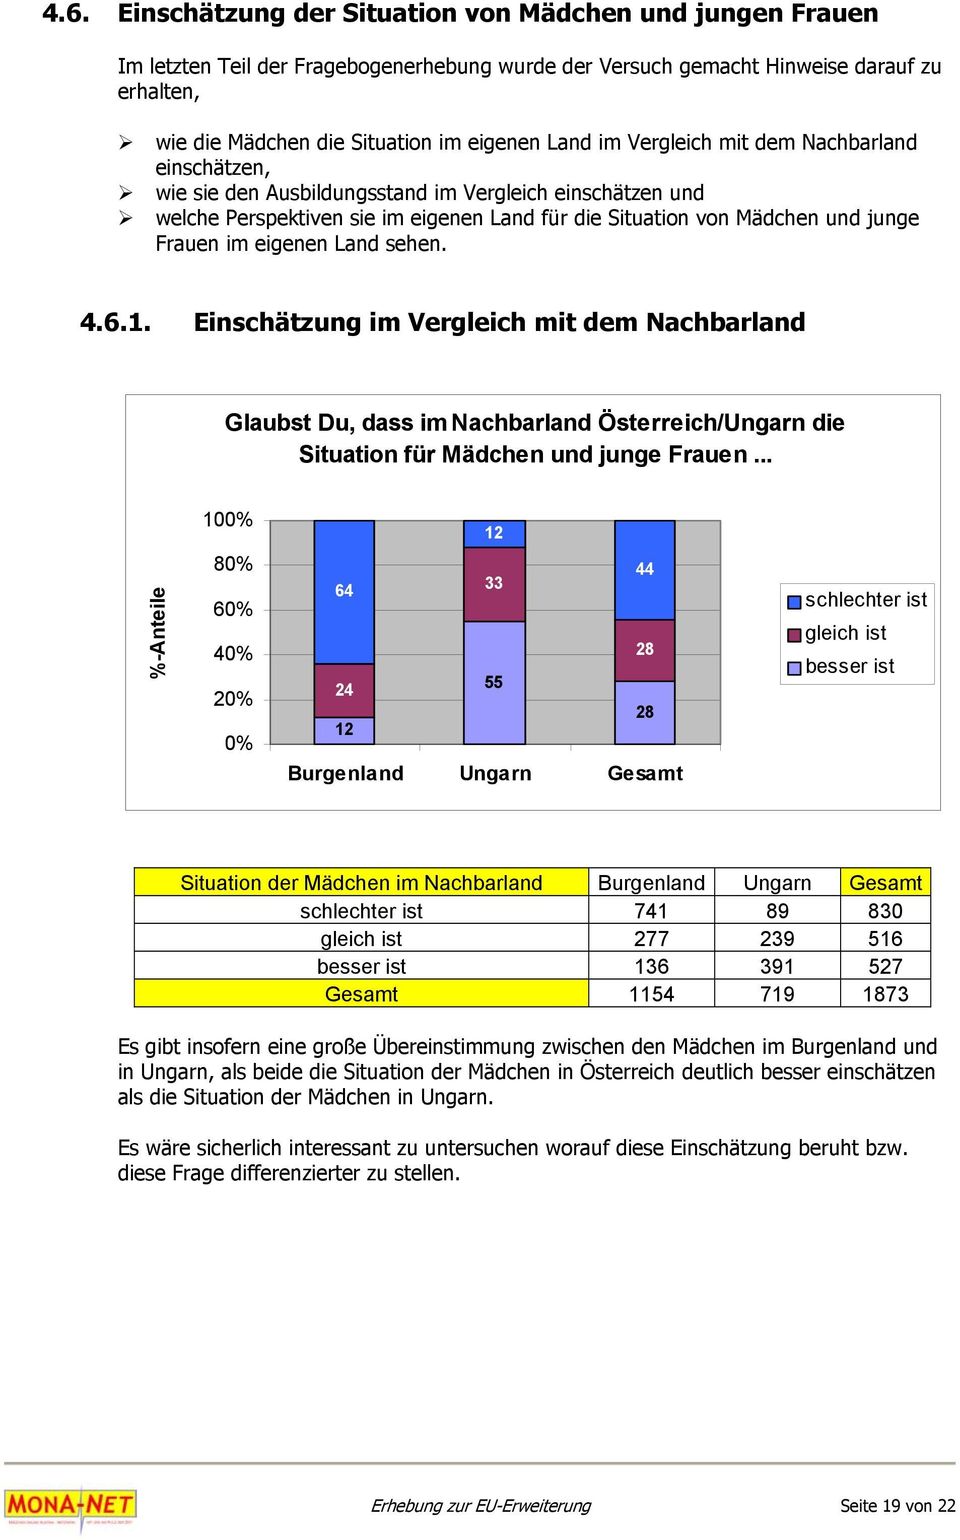 eigenen Land sehen. 4.6.1. Einschätzung im Vergleich mit dem Nachbarland Glaubst Du, dass im Nachbarland Österreich/Ungarn die Situation für Mädchen und junge Frauen.